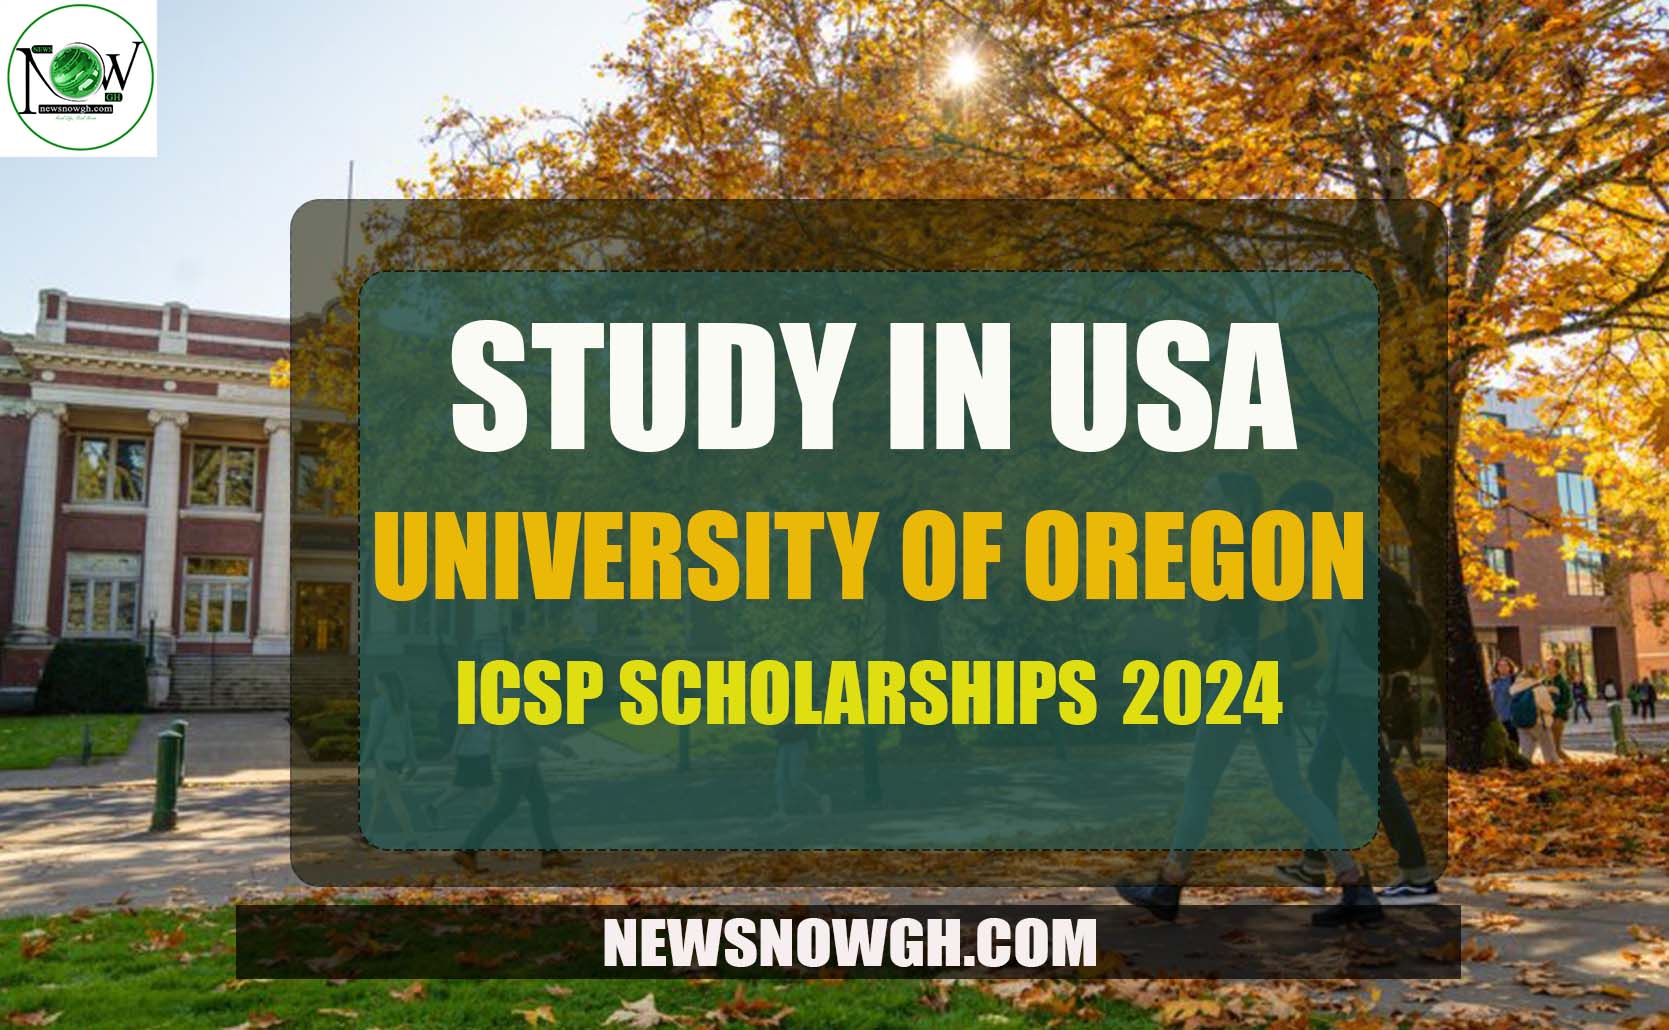 Study In USA University of Oregon ICSP Scholarships 2024